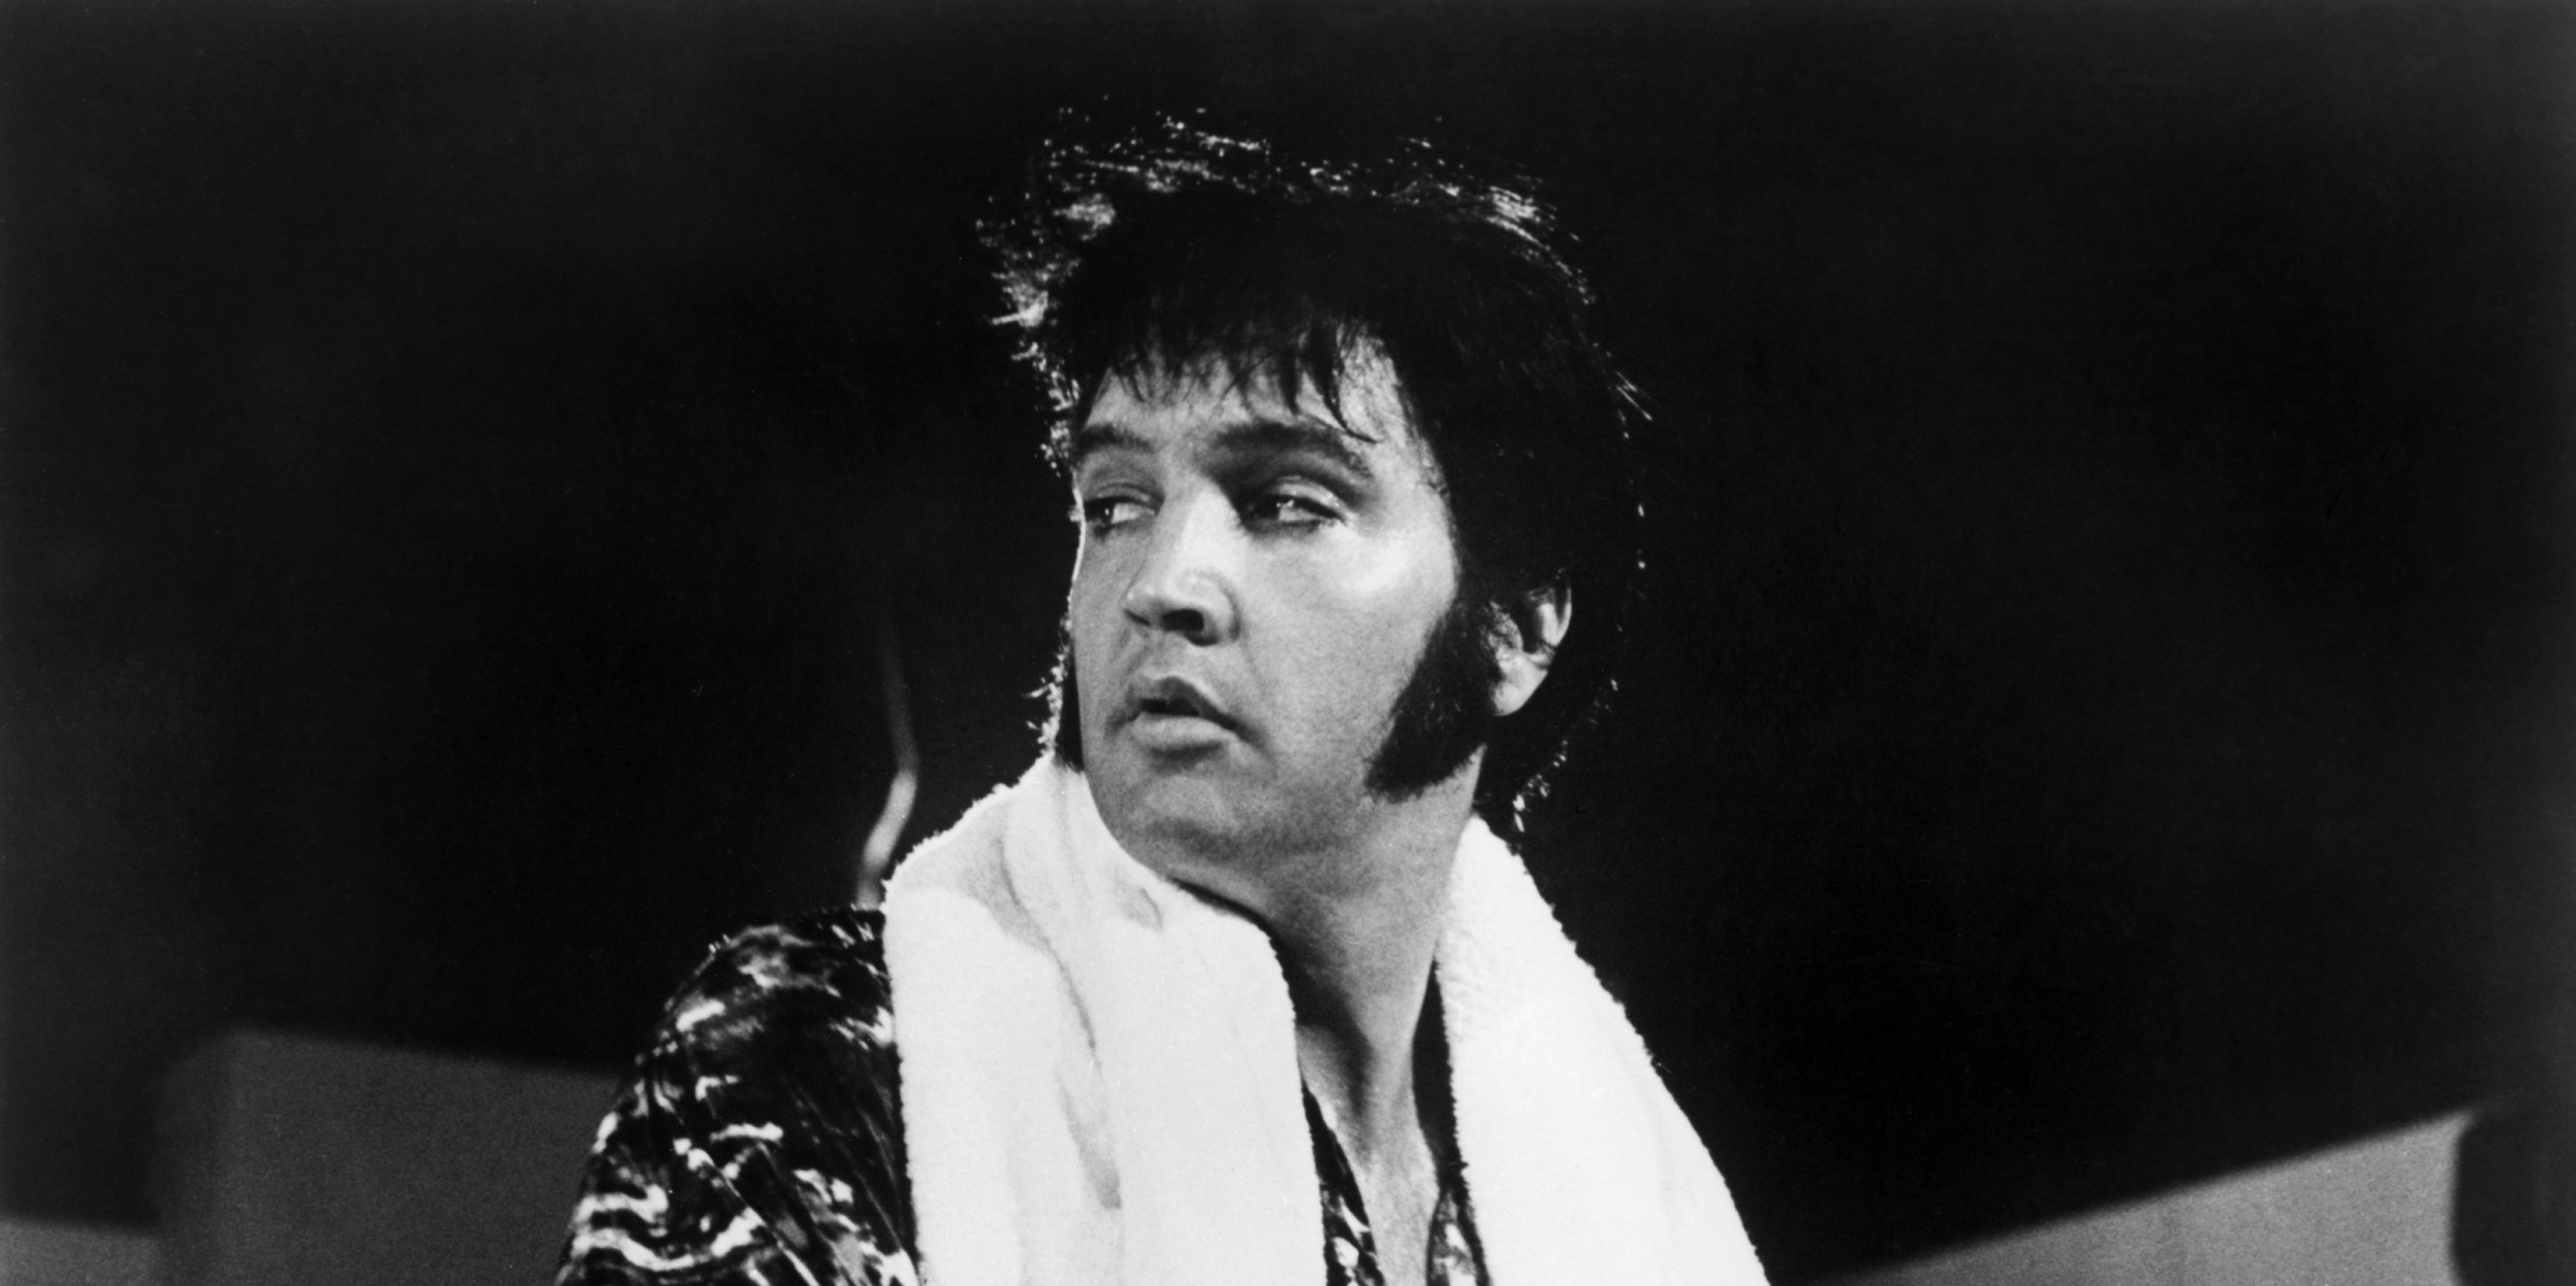 Photo of Elvis PRESLEY